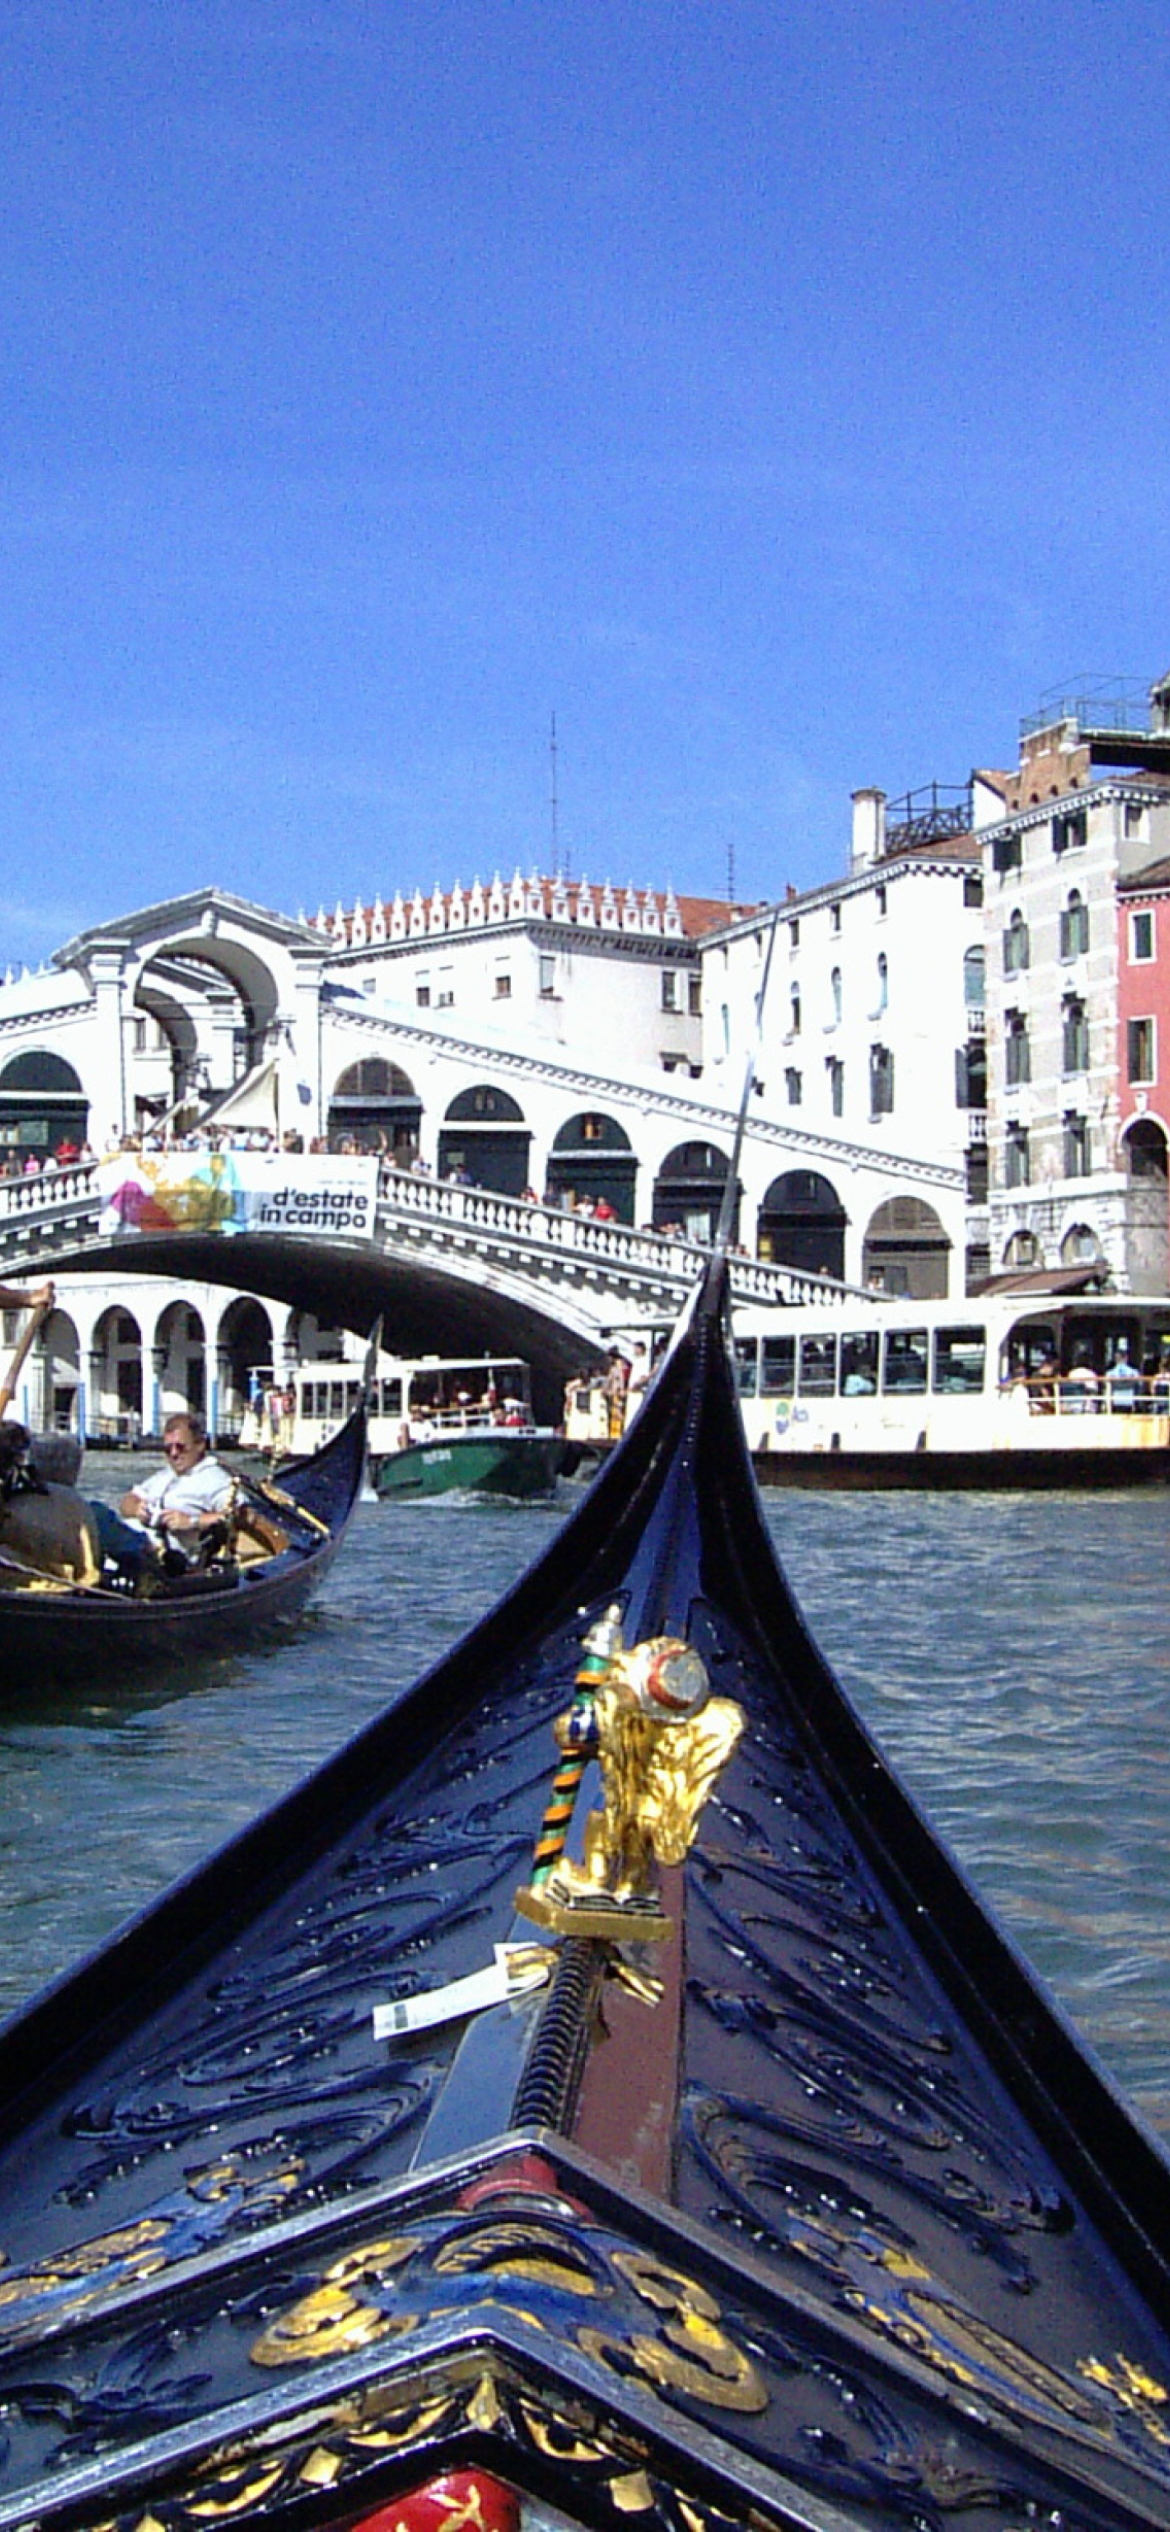 Canals of Venice wallpaper 1170x2532